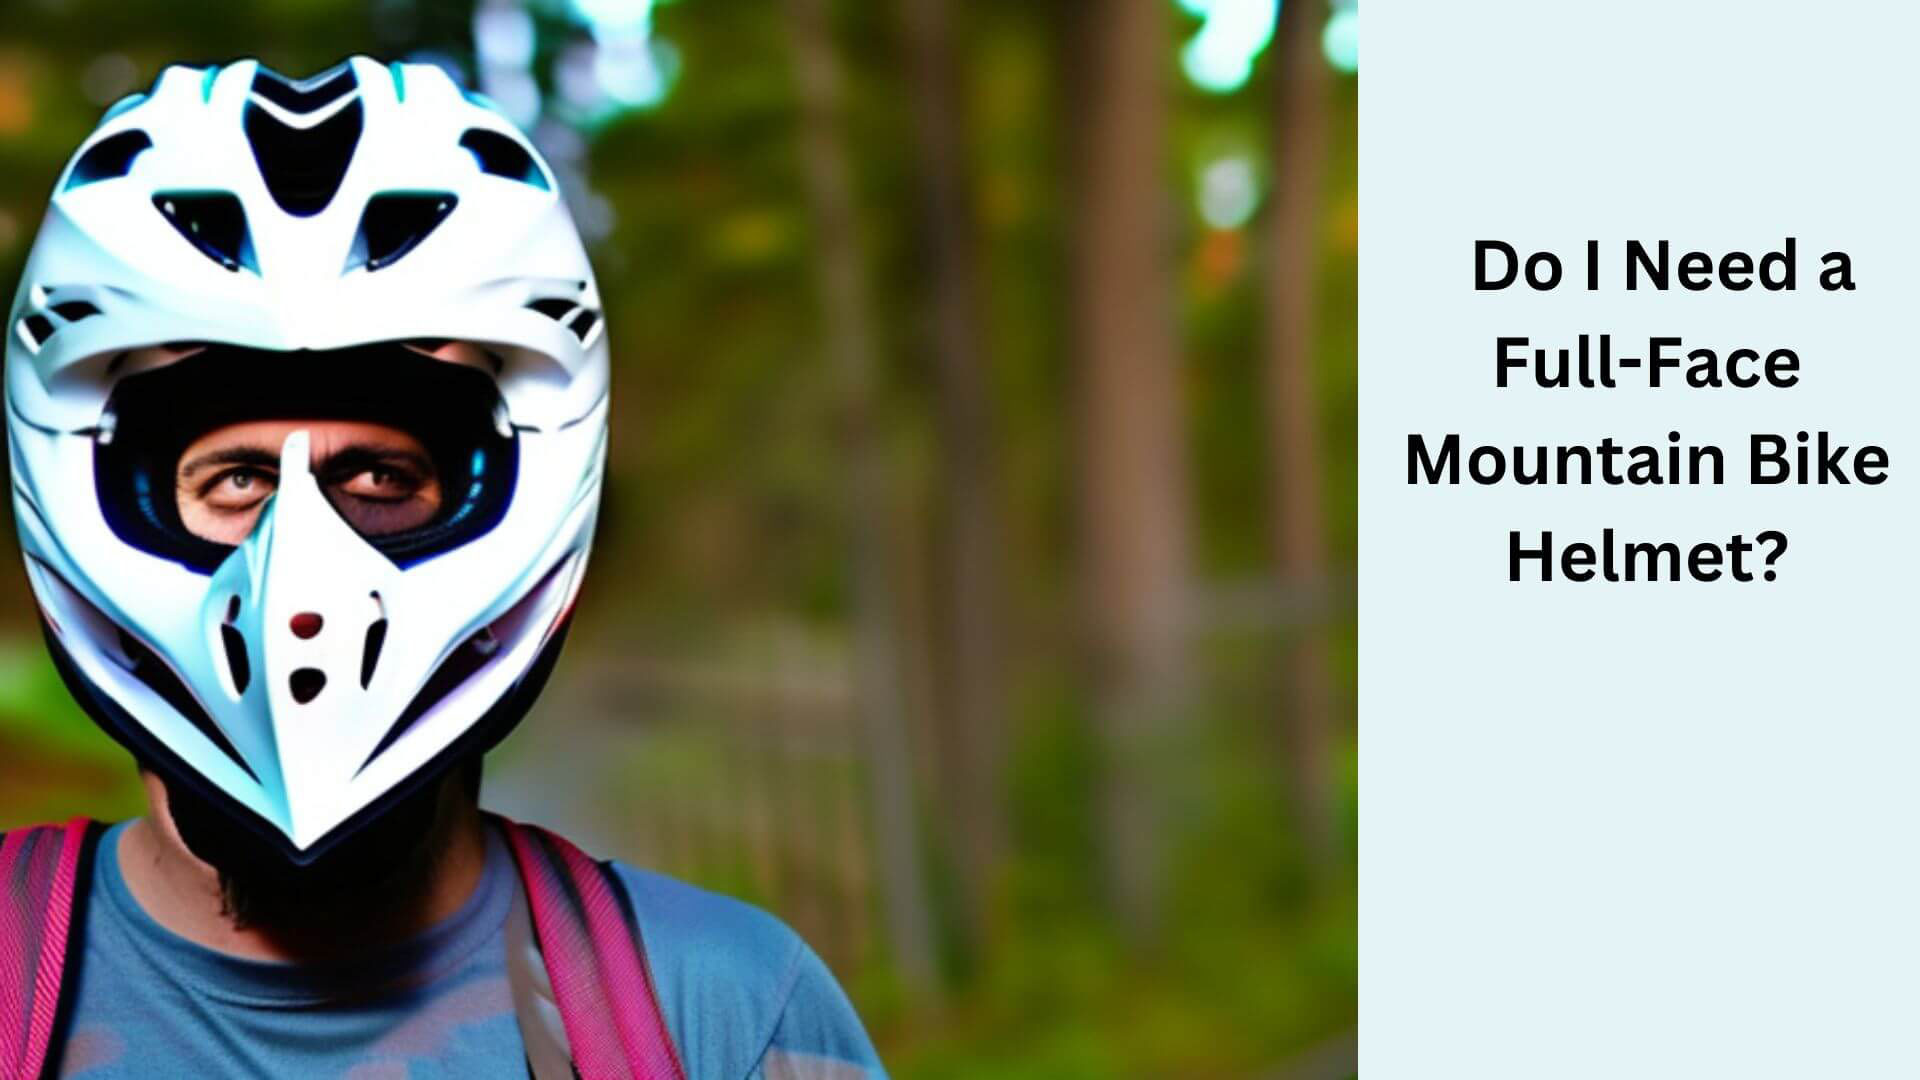 Do I Need a Full-Face Mountain Bike Helmet?